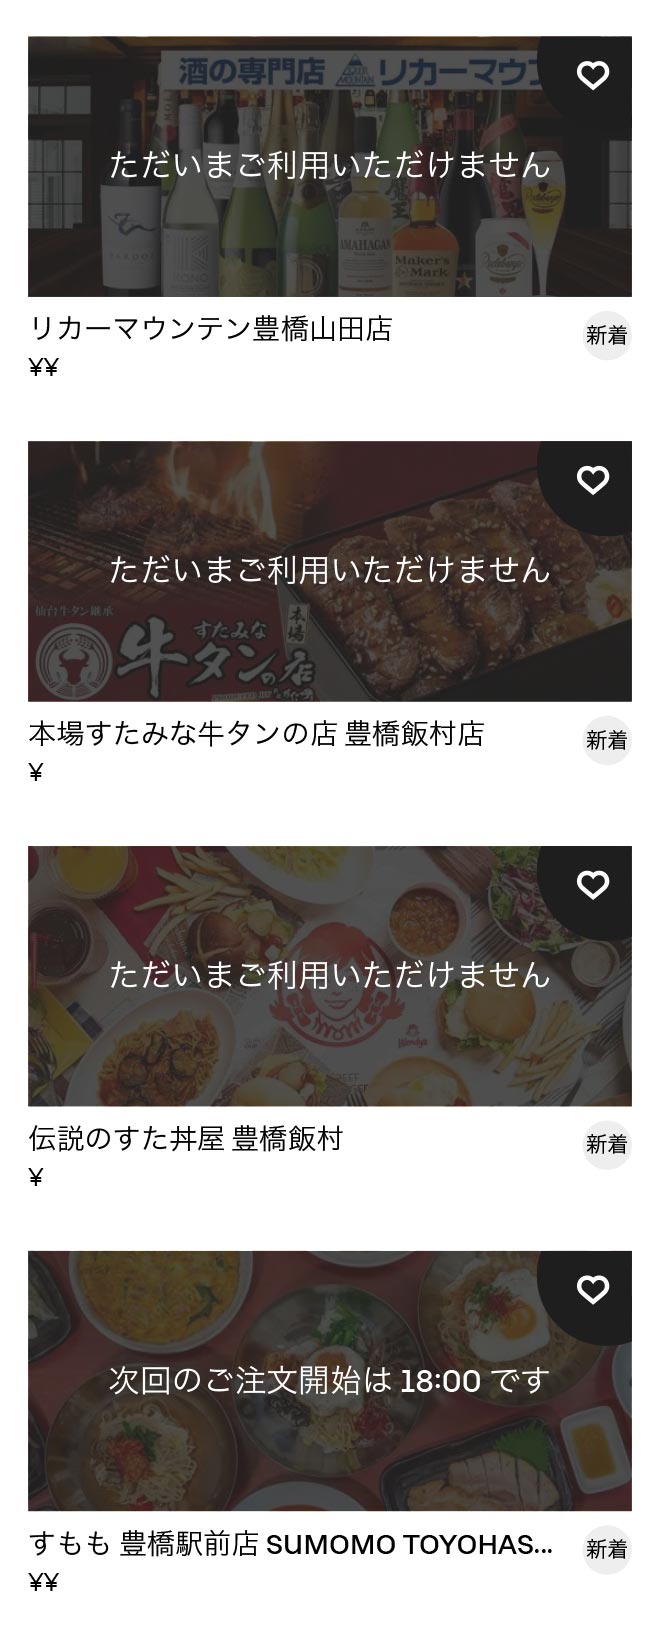 Aichi daigaku menu 2012 08